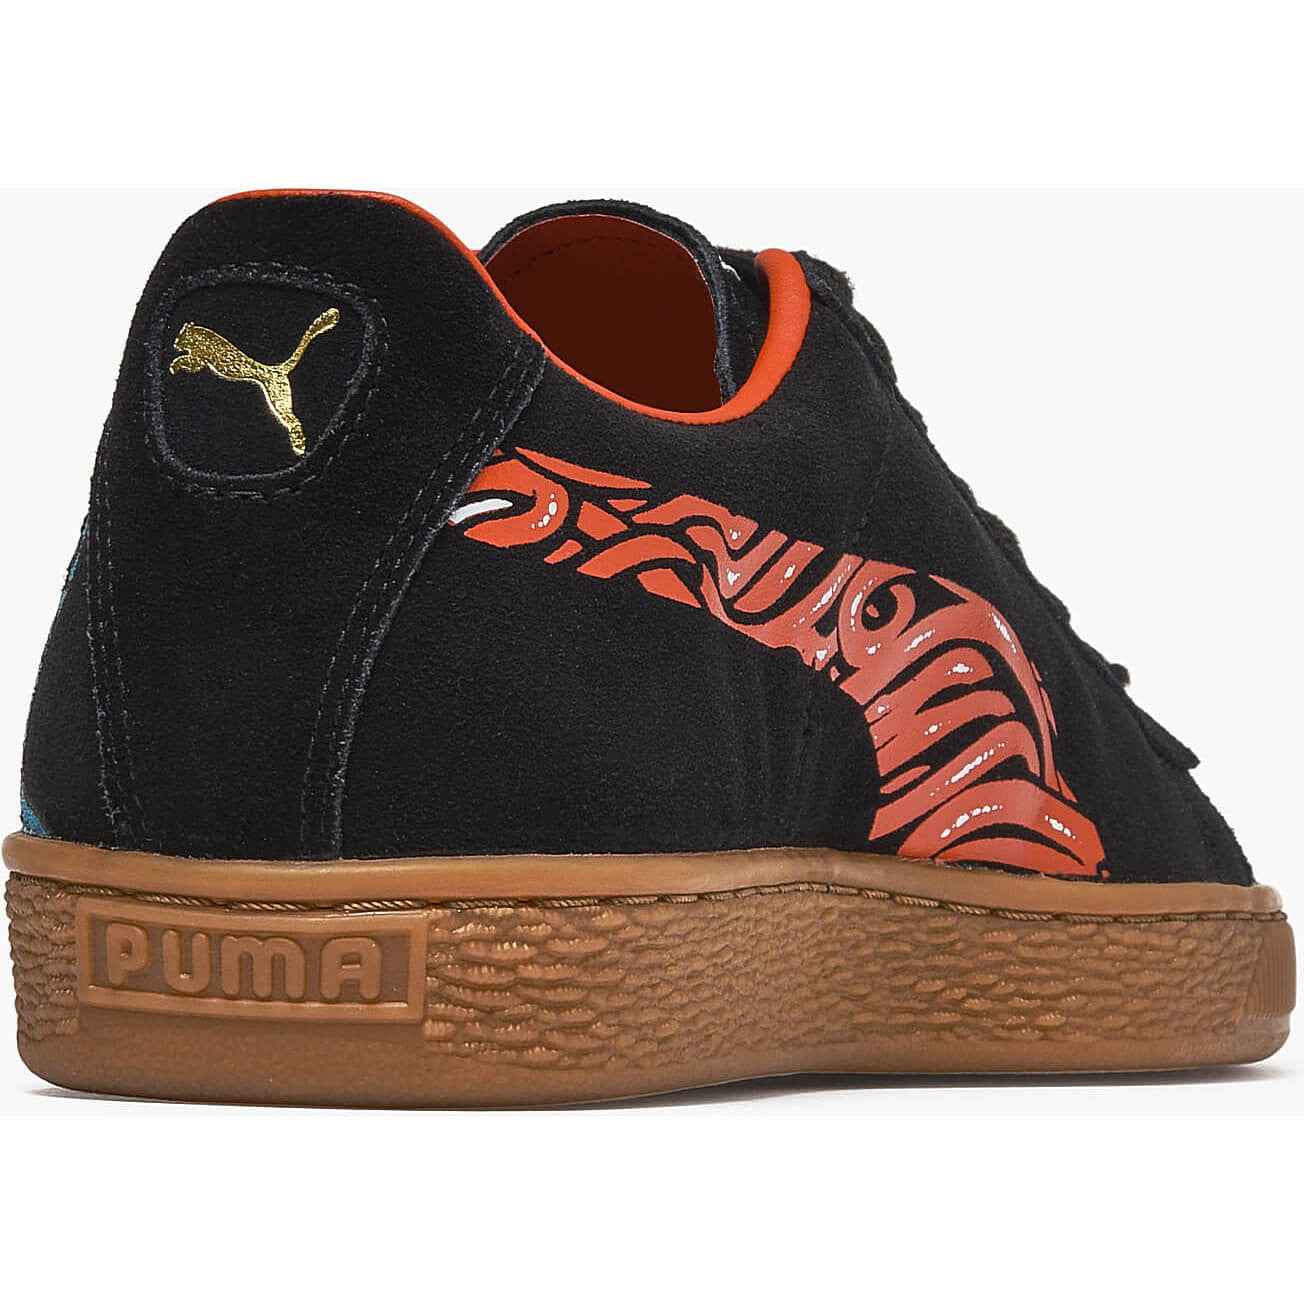 Puma Suede Classic X Santa Cruz Black